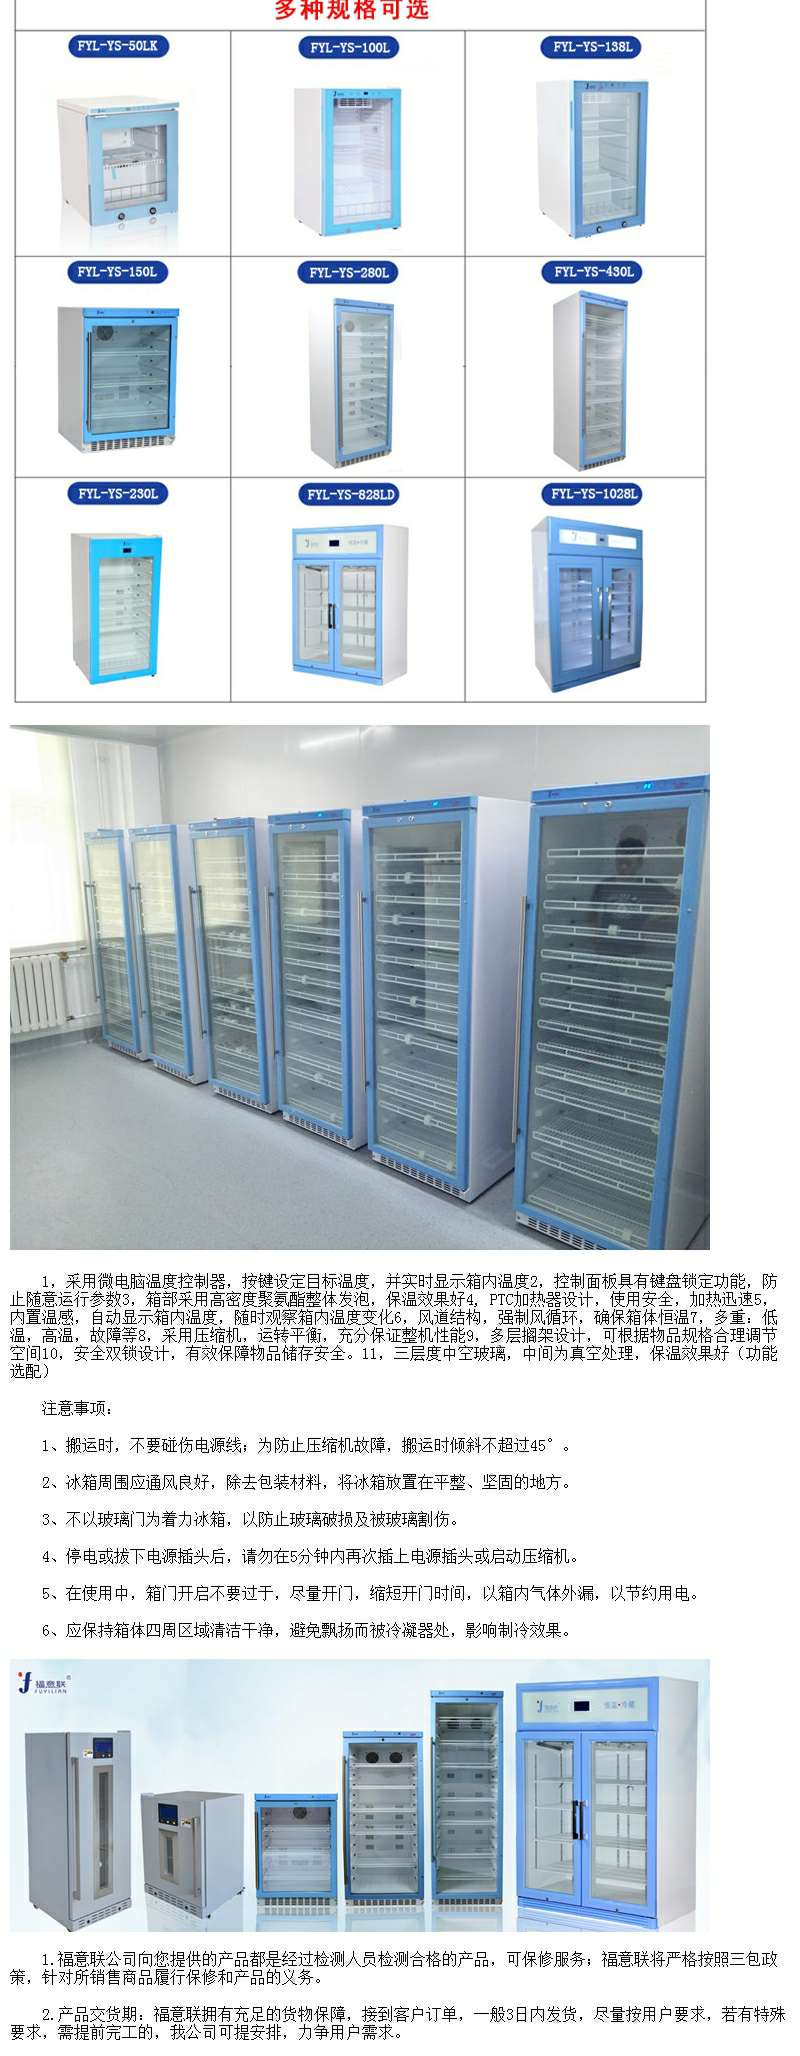 福意联恒温冰柜温度2-48度可调控容积230L技术指导和说明